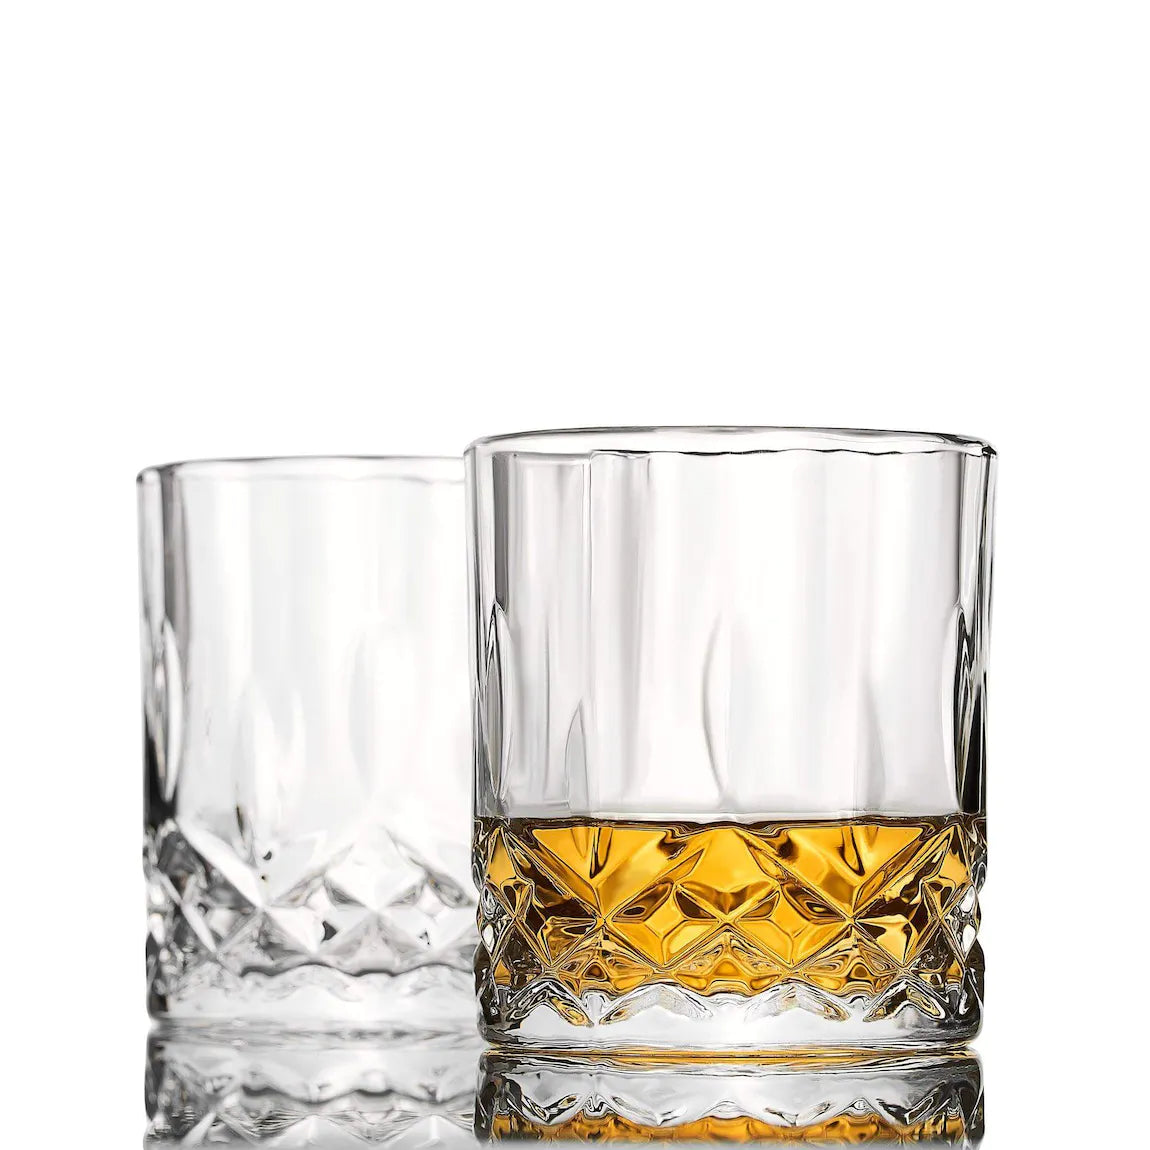 Zwei Signature Whiskygläser vor weißem Hintergrund, eines davon ist mit Whisky gefüllt